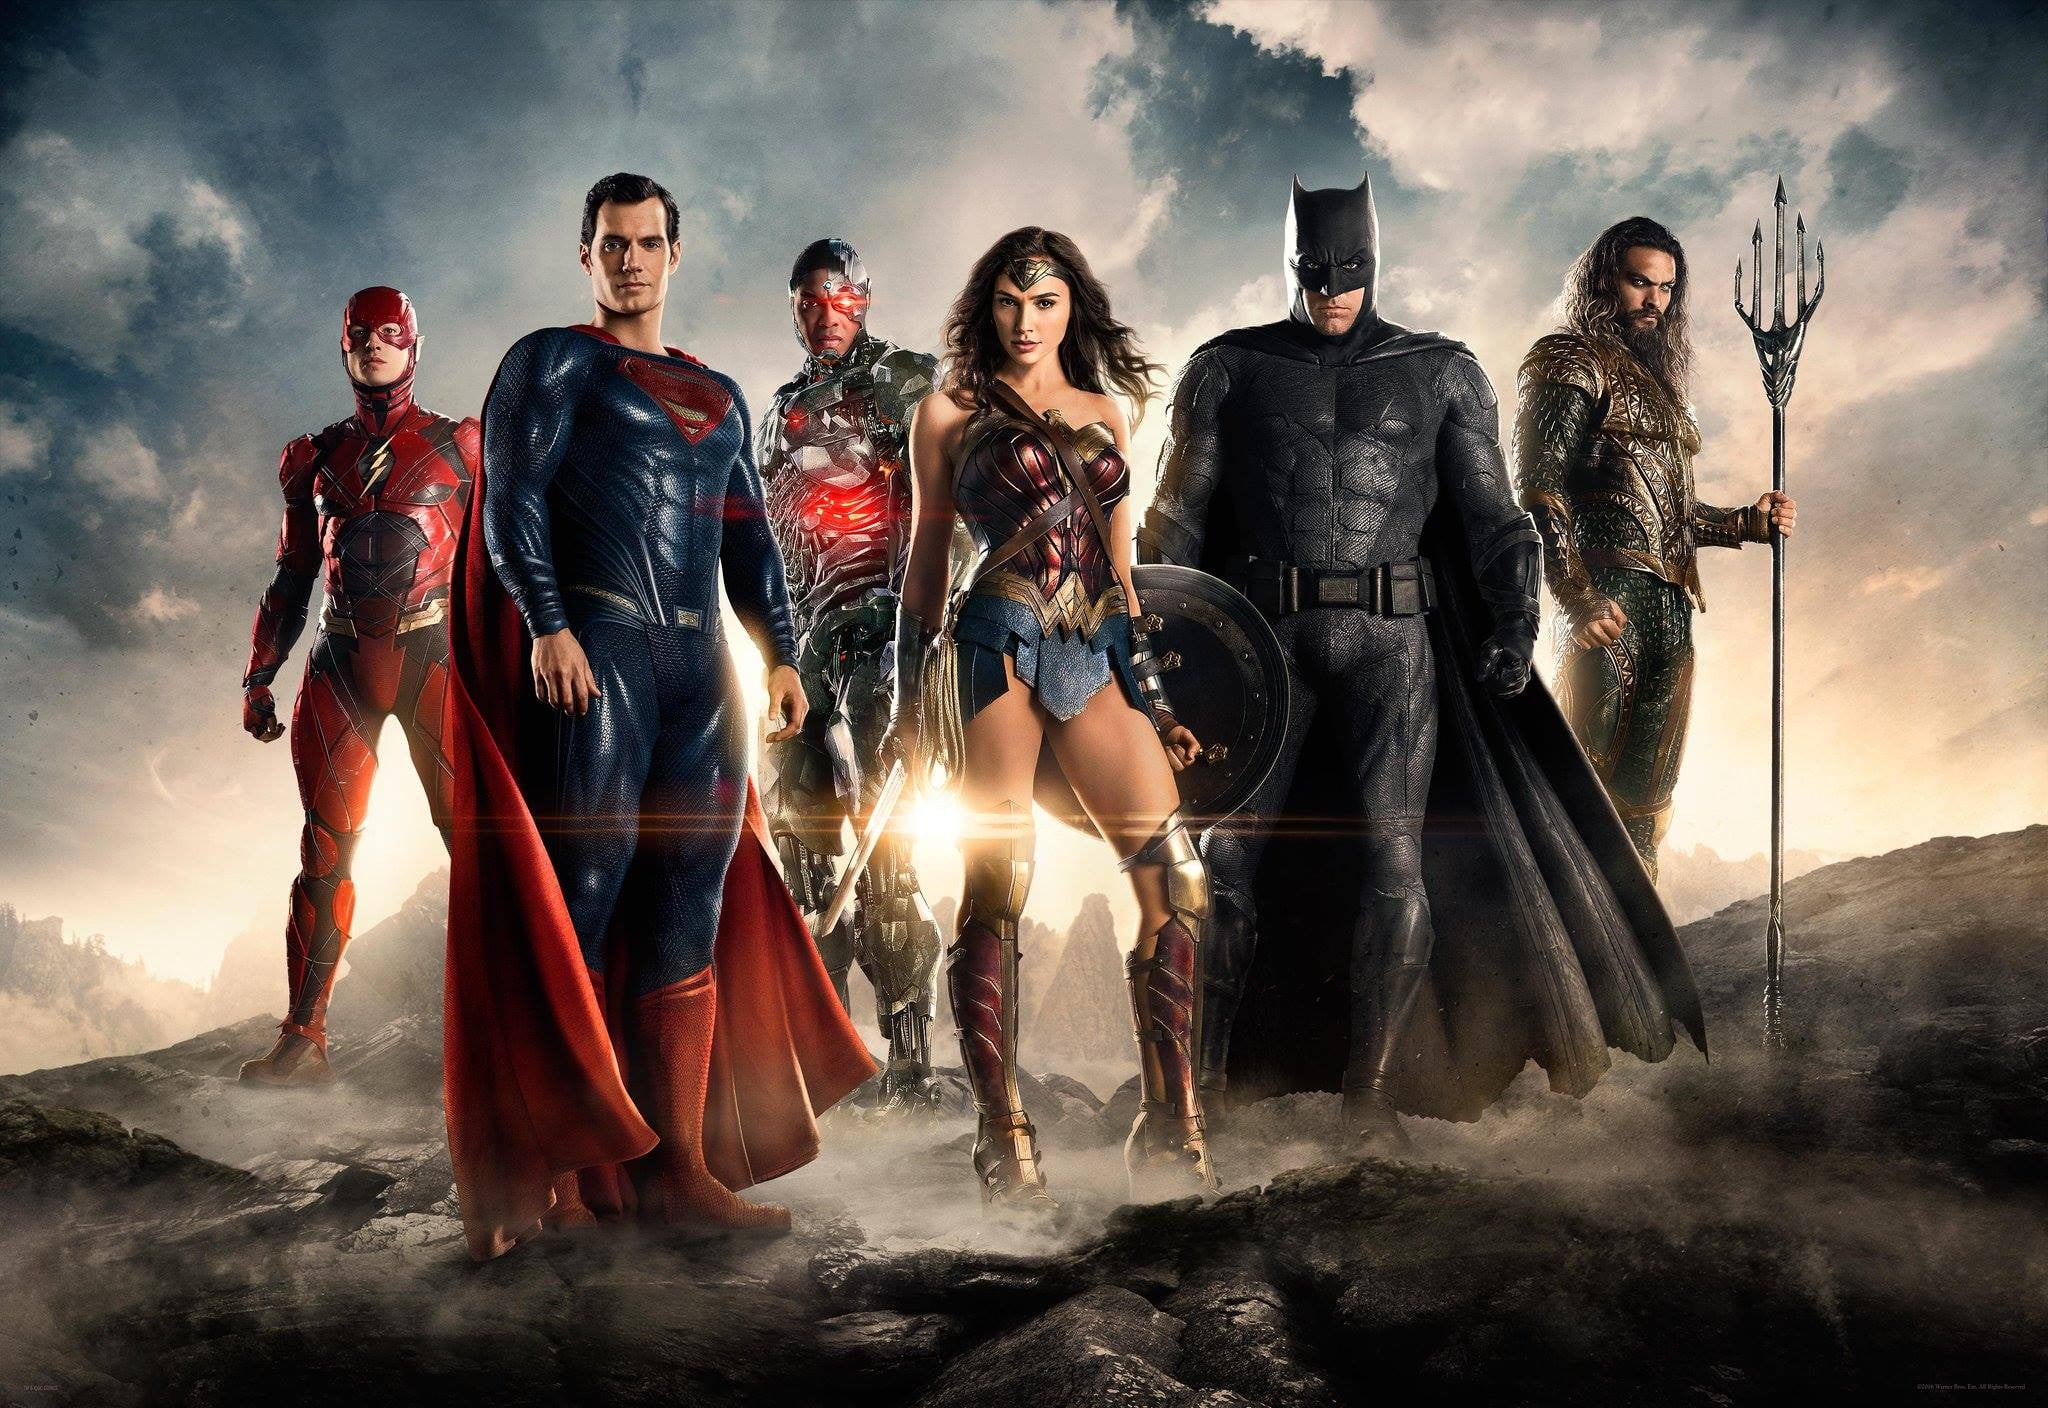 DC Comics Justice League digital wallpaper, Batman, Superman